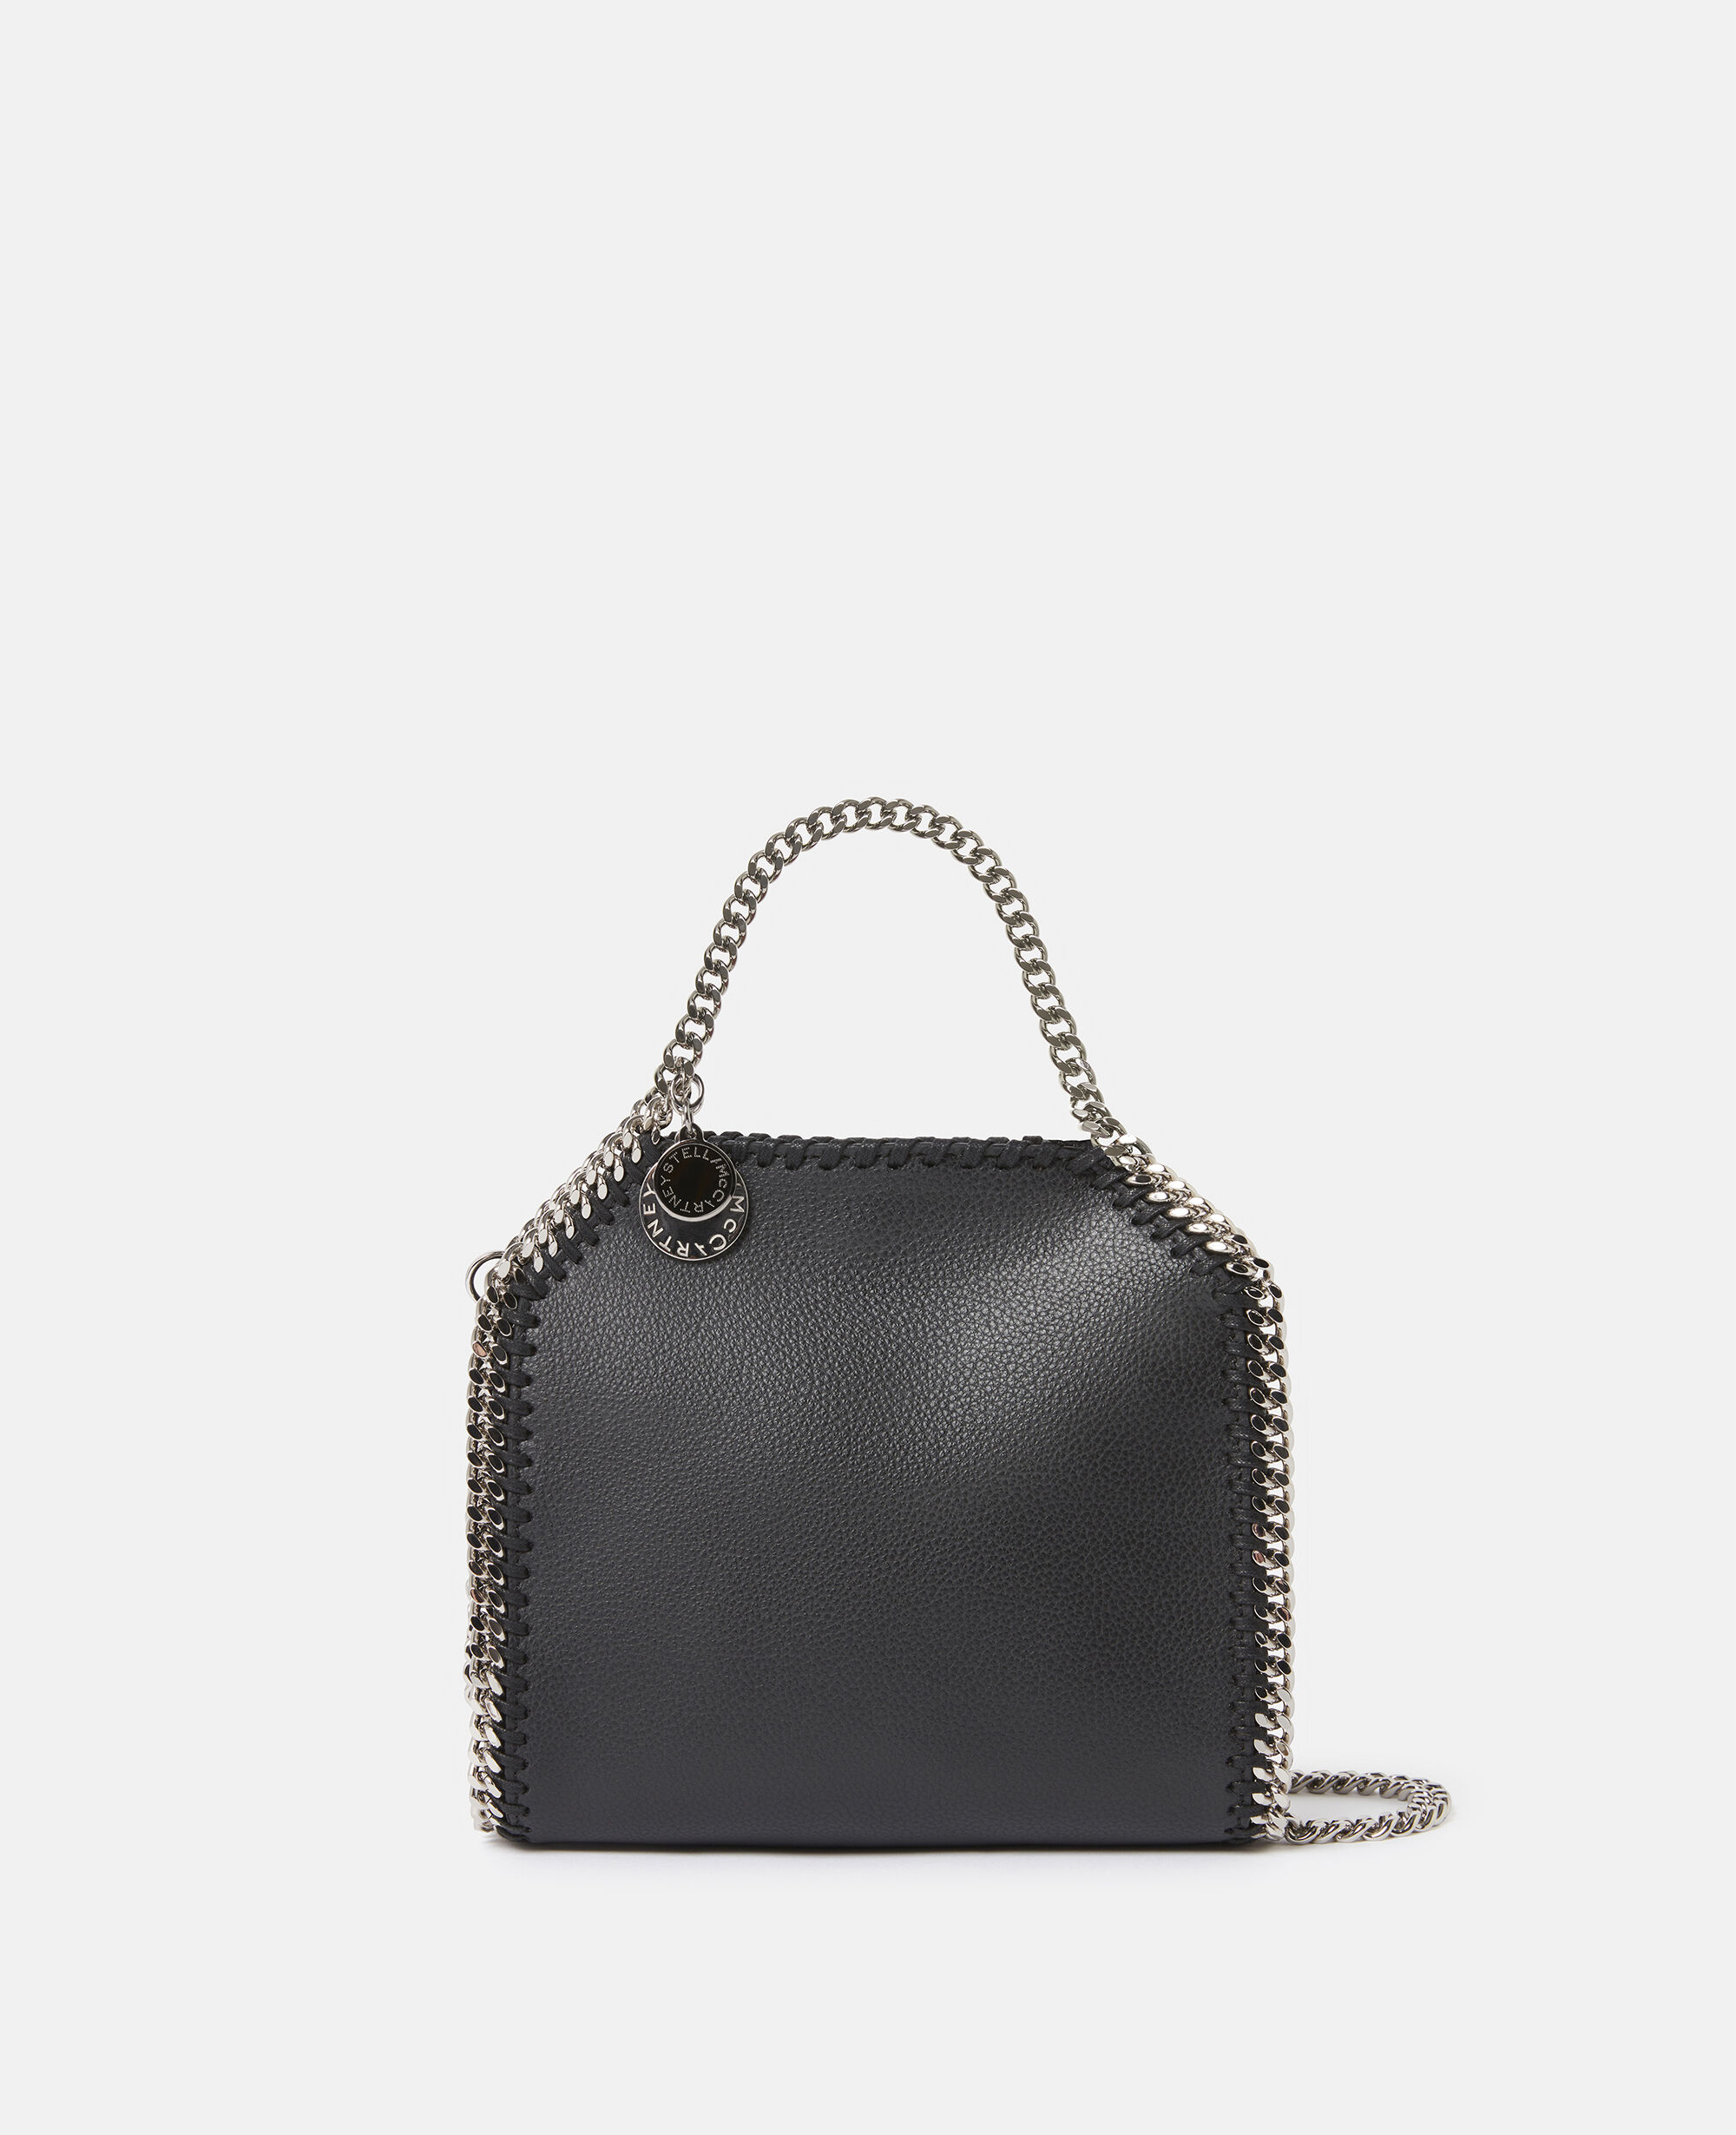 Stella McCartney Vegetarian Leather Chain-Link Shoulder Bag - Pink Shoulder  Bags, Handbags - STL258497 | The RealReal